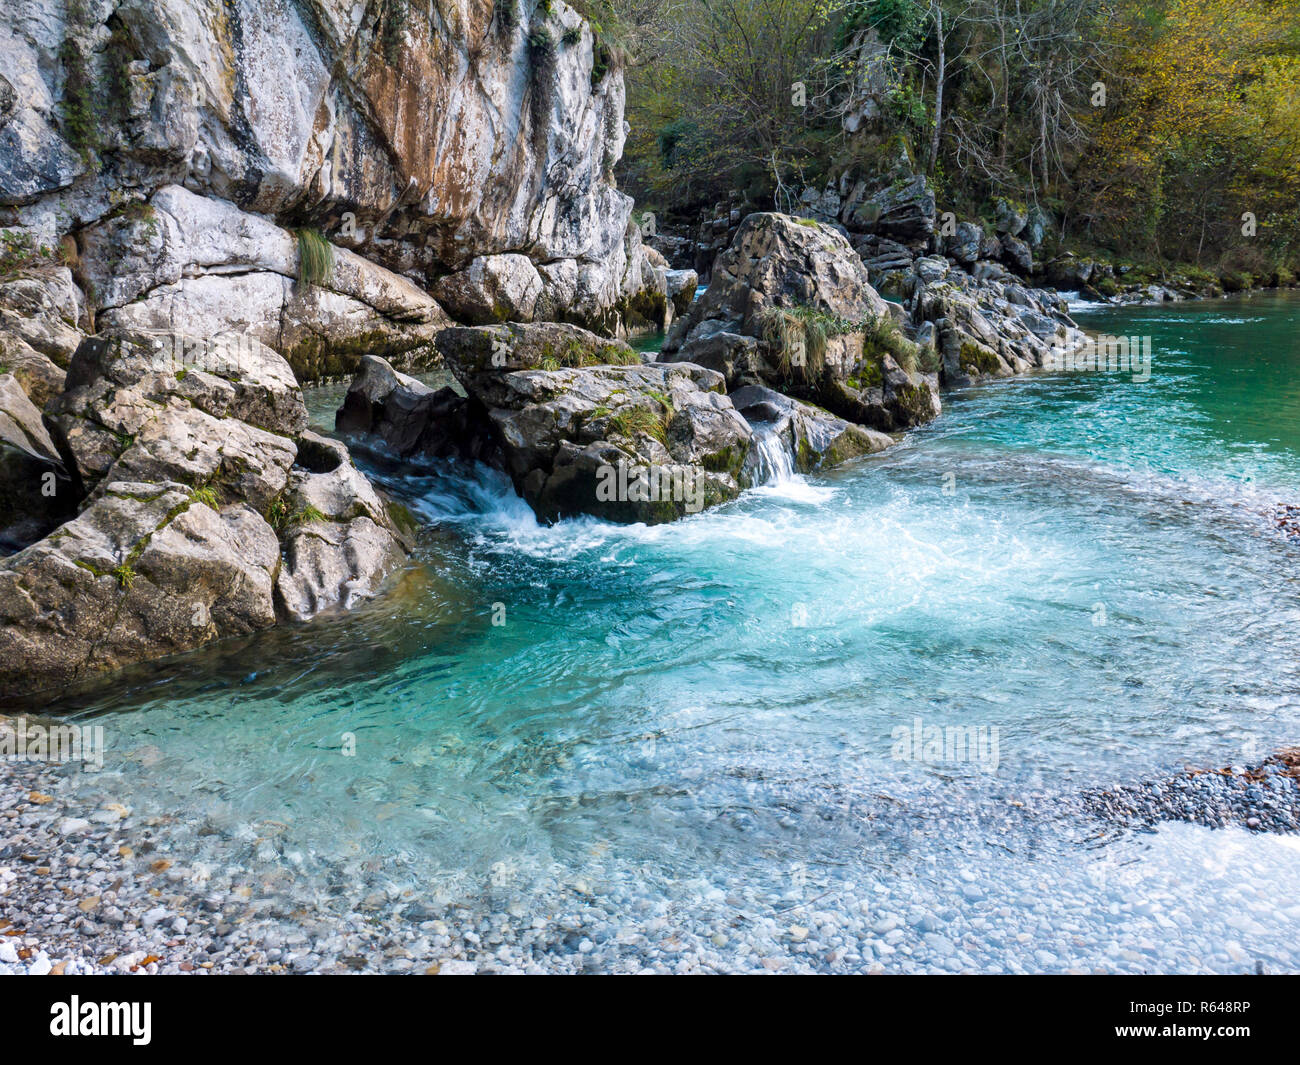 Kristallklarem aquamarinen Wasser der Dobra mountain river in Asturien im Norden Spaniens Stockfoto